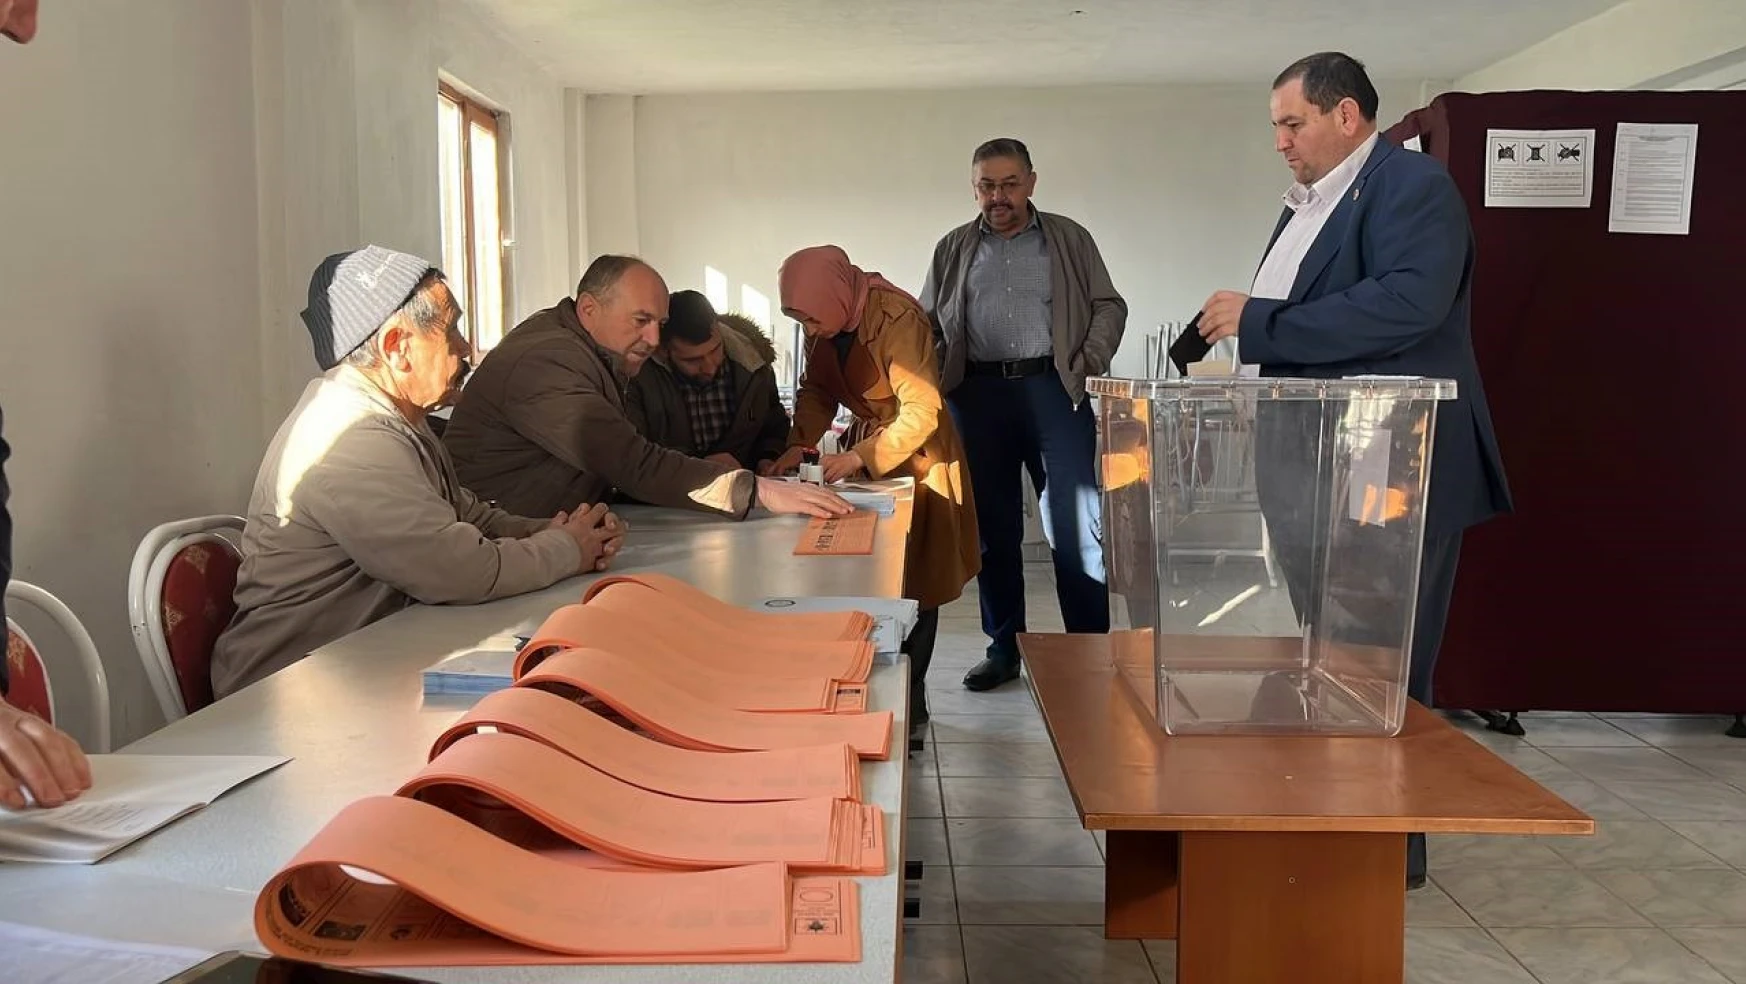 Bolu'da seçmenler oy kullanmaya başladı